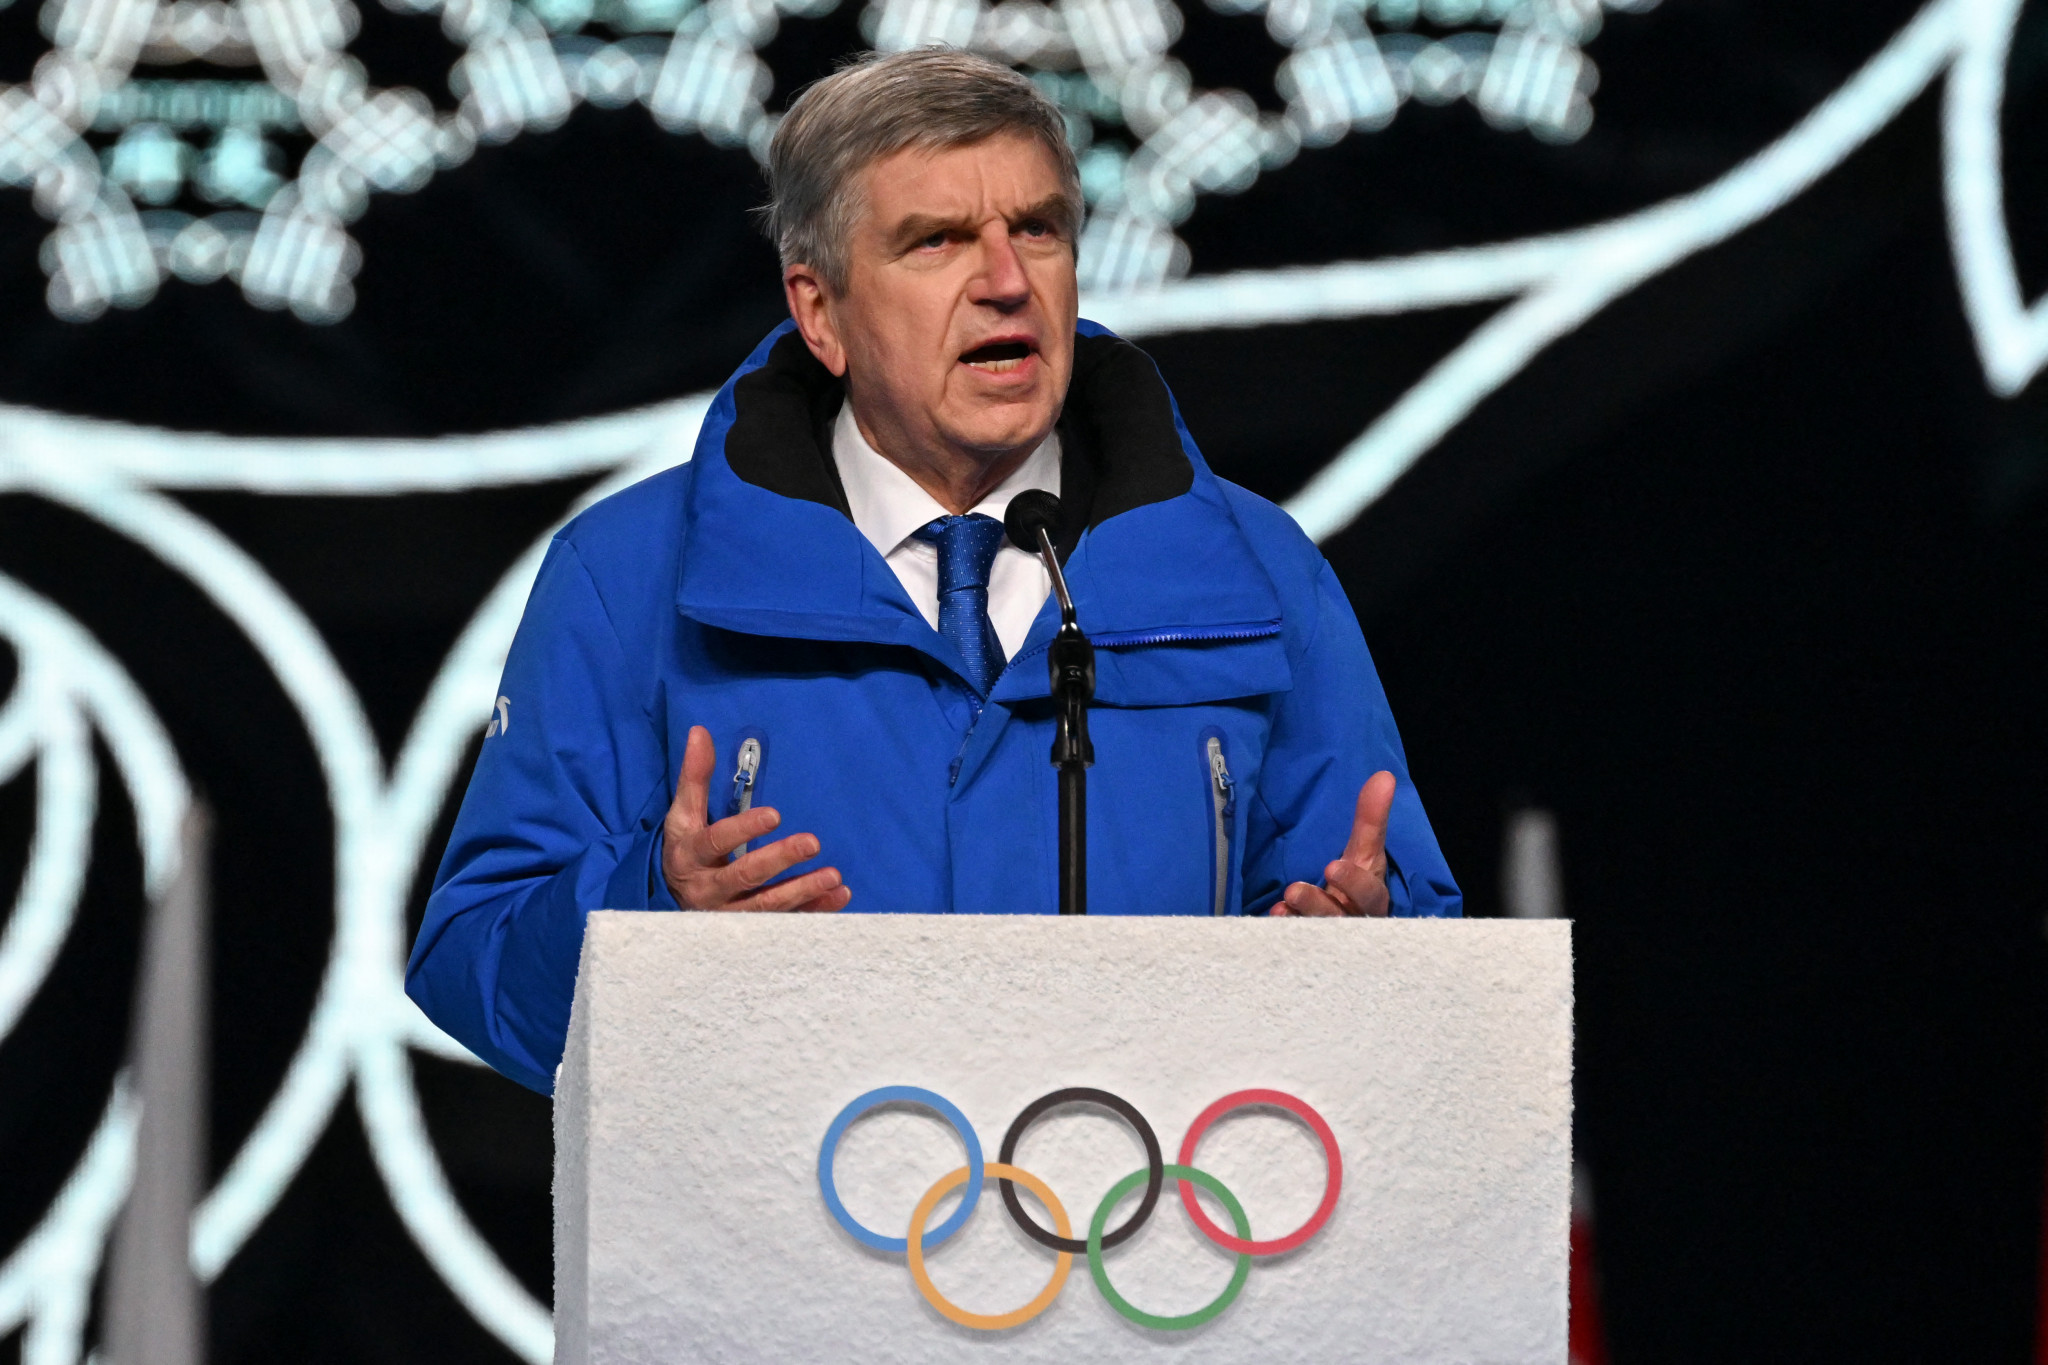 IOC President Thomas Bach said to 